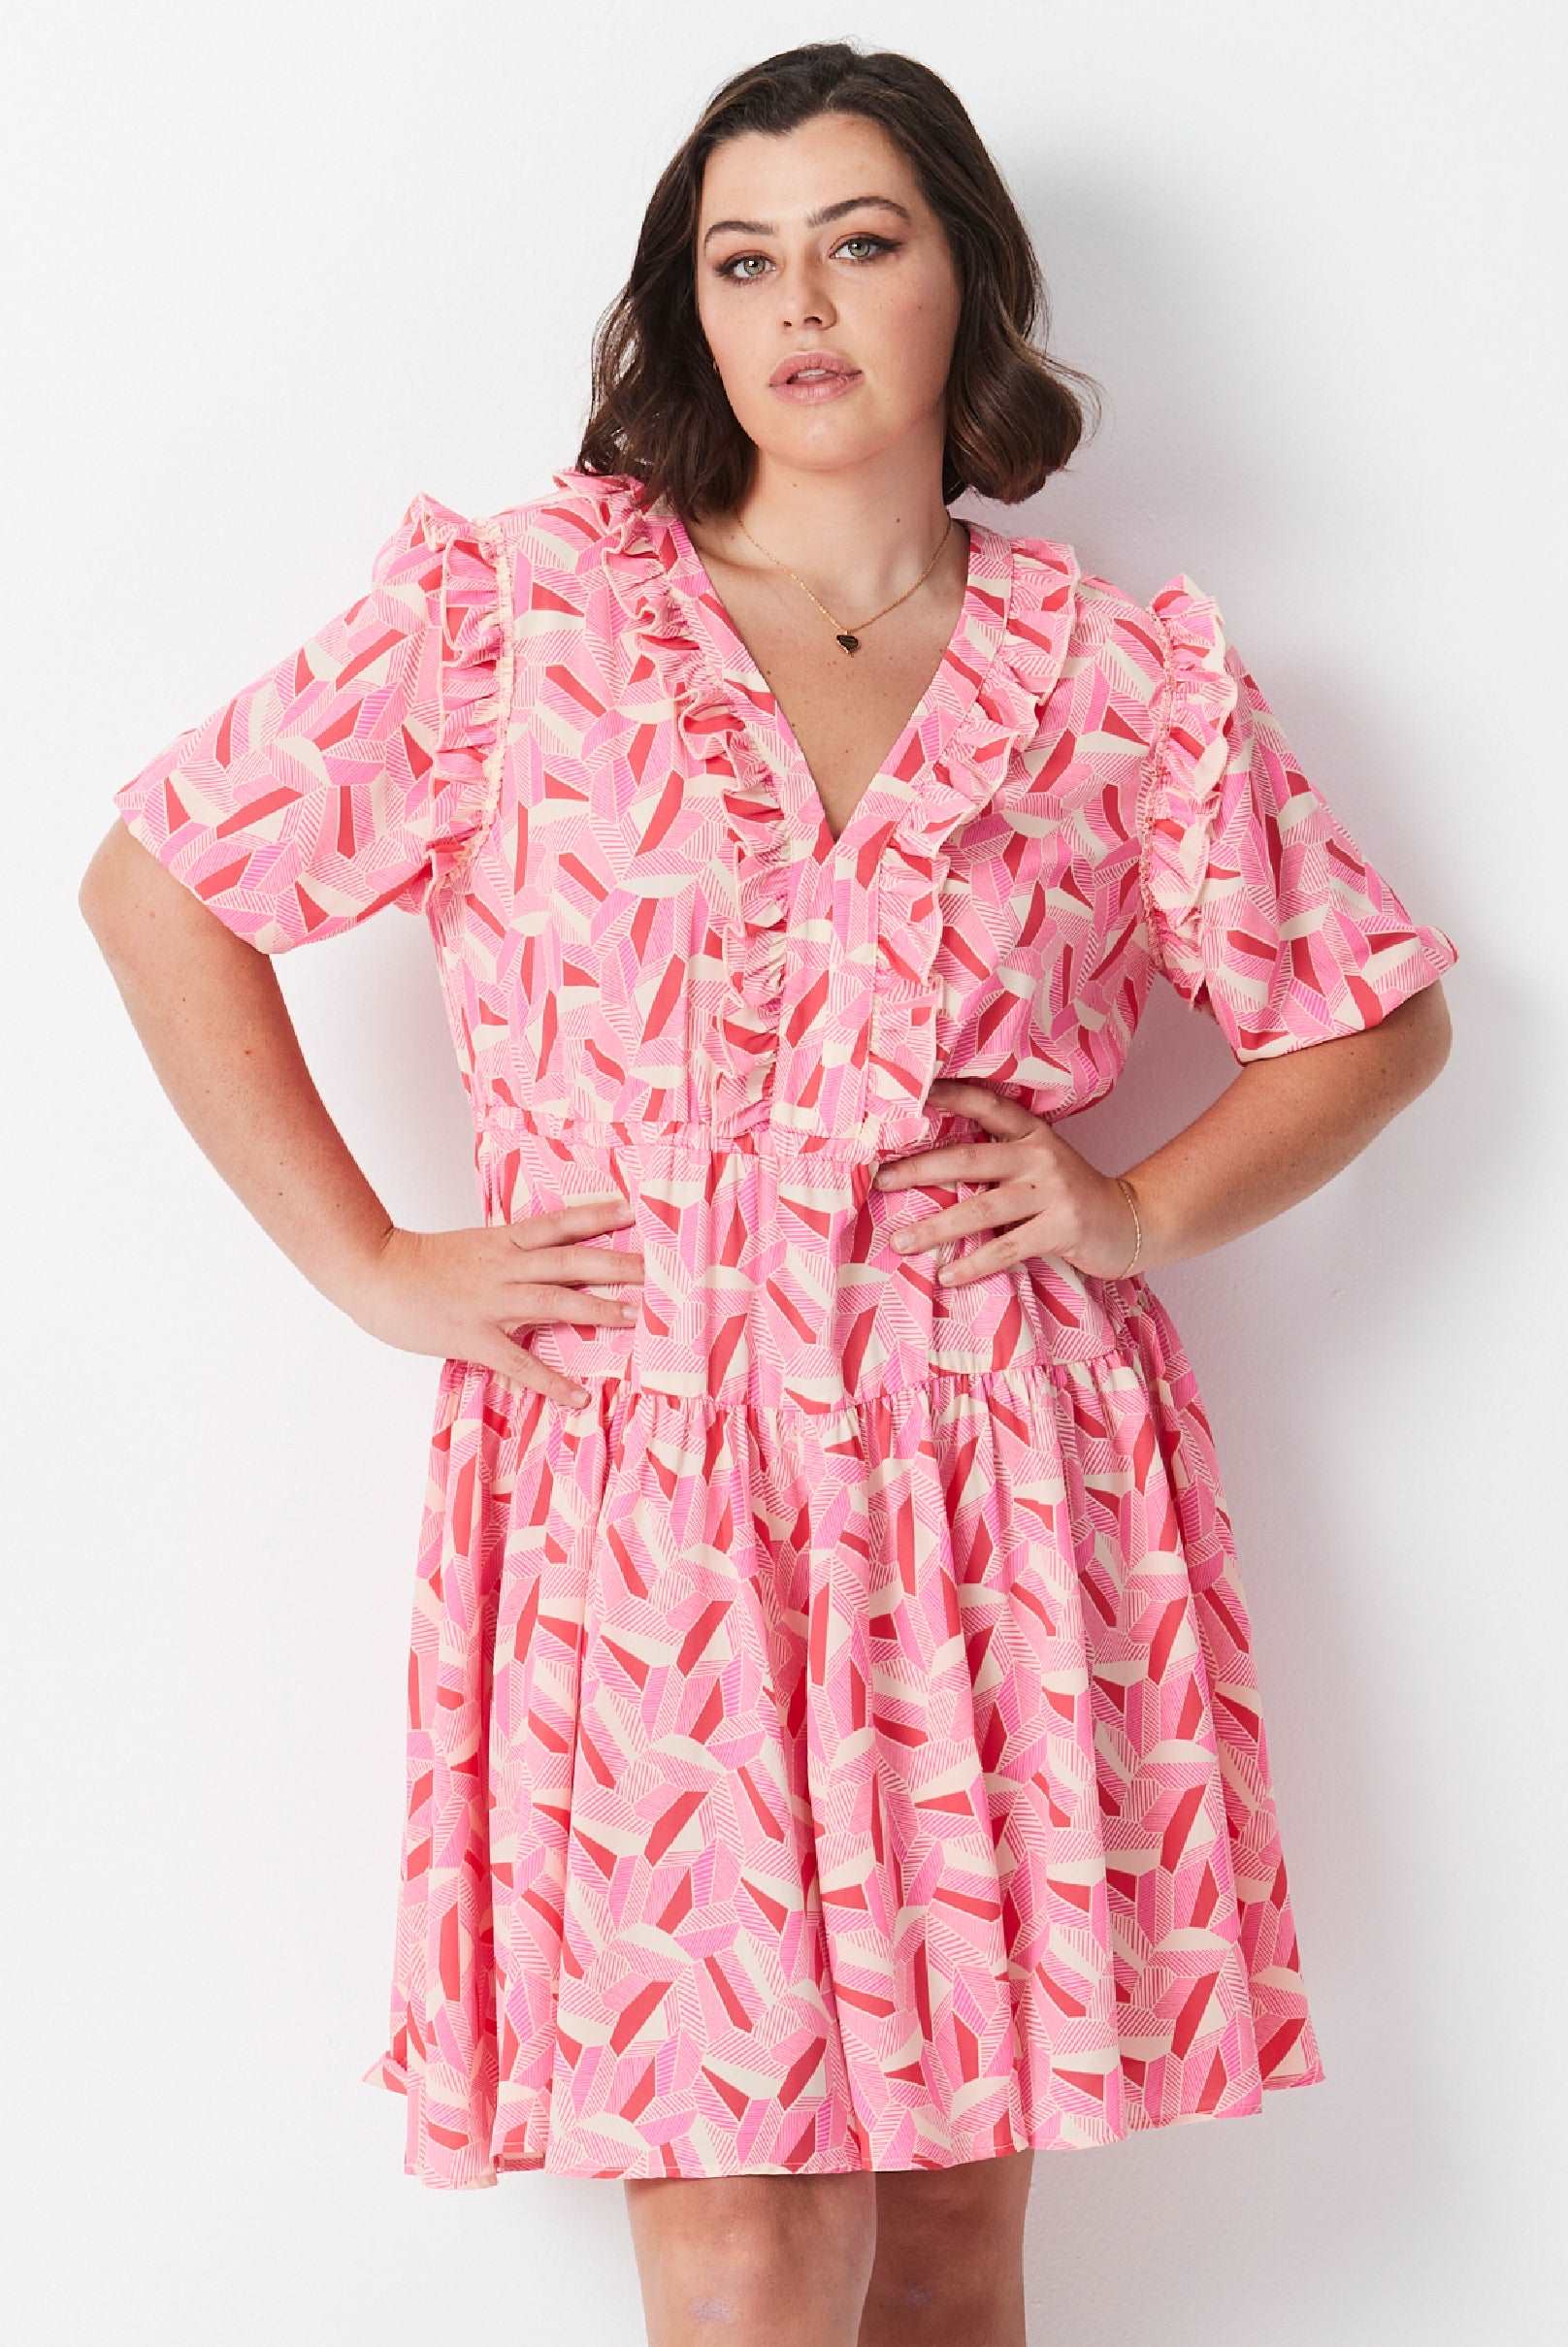 Escher Print Dress - Pink Multi